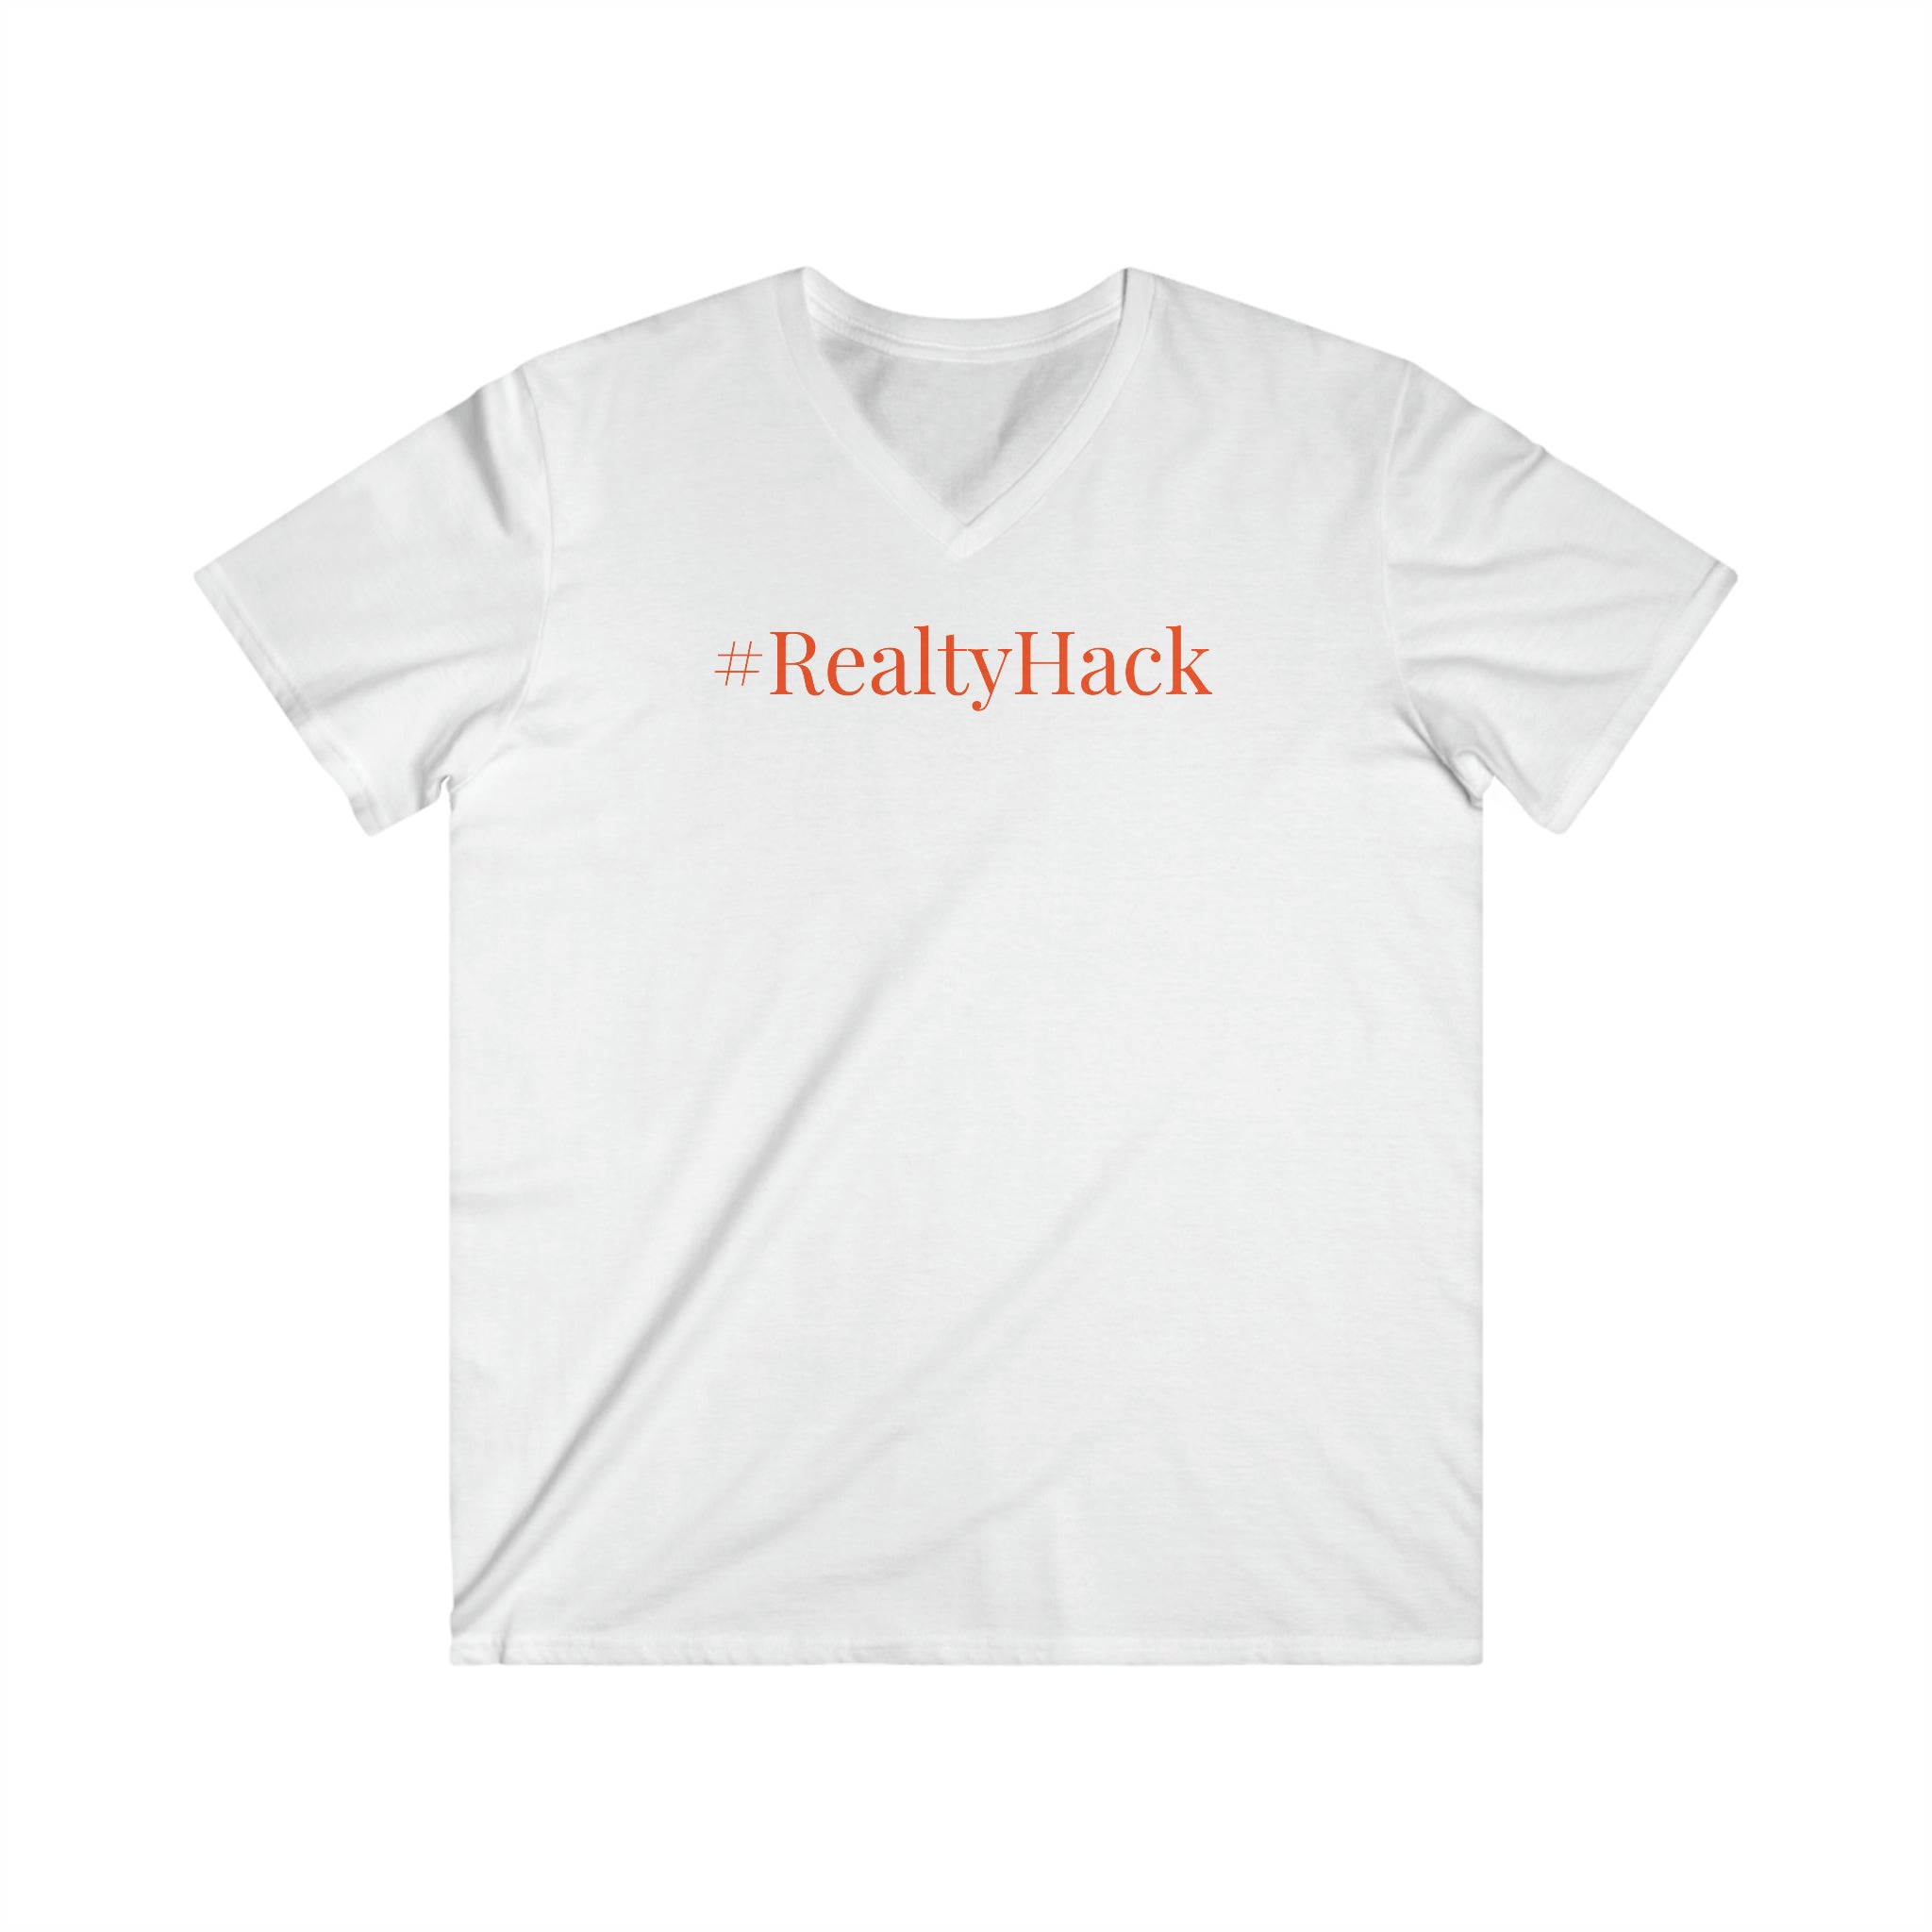 #RealtyHack Men's Fitted V-Neck Short Sleeve Tee